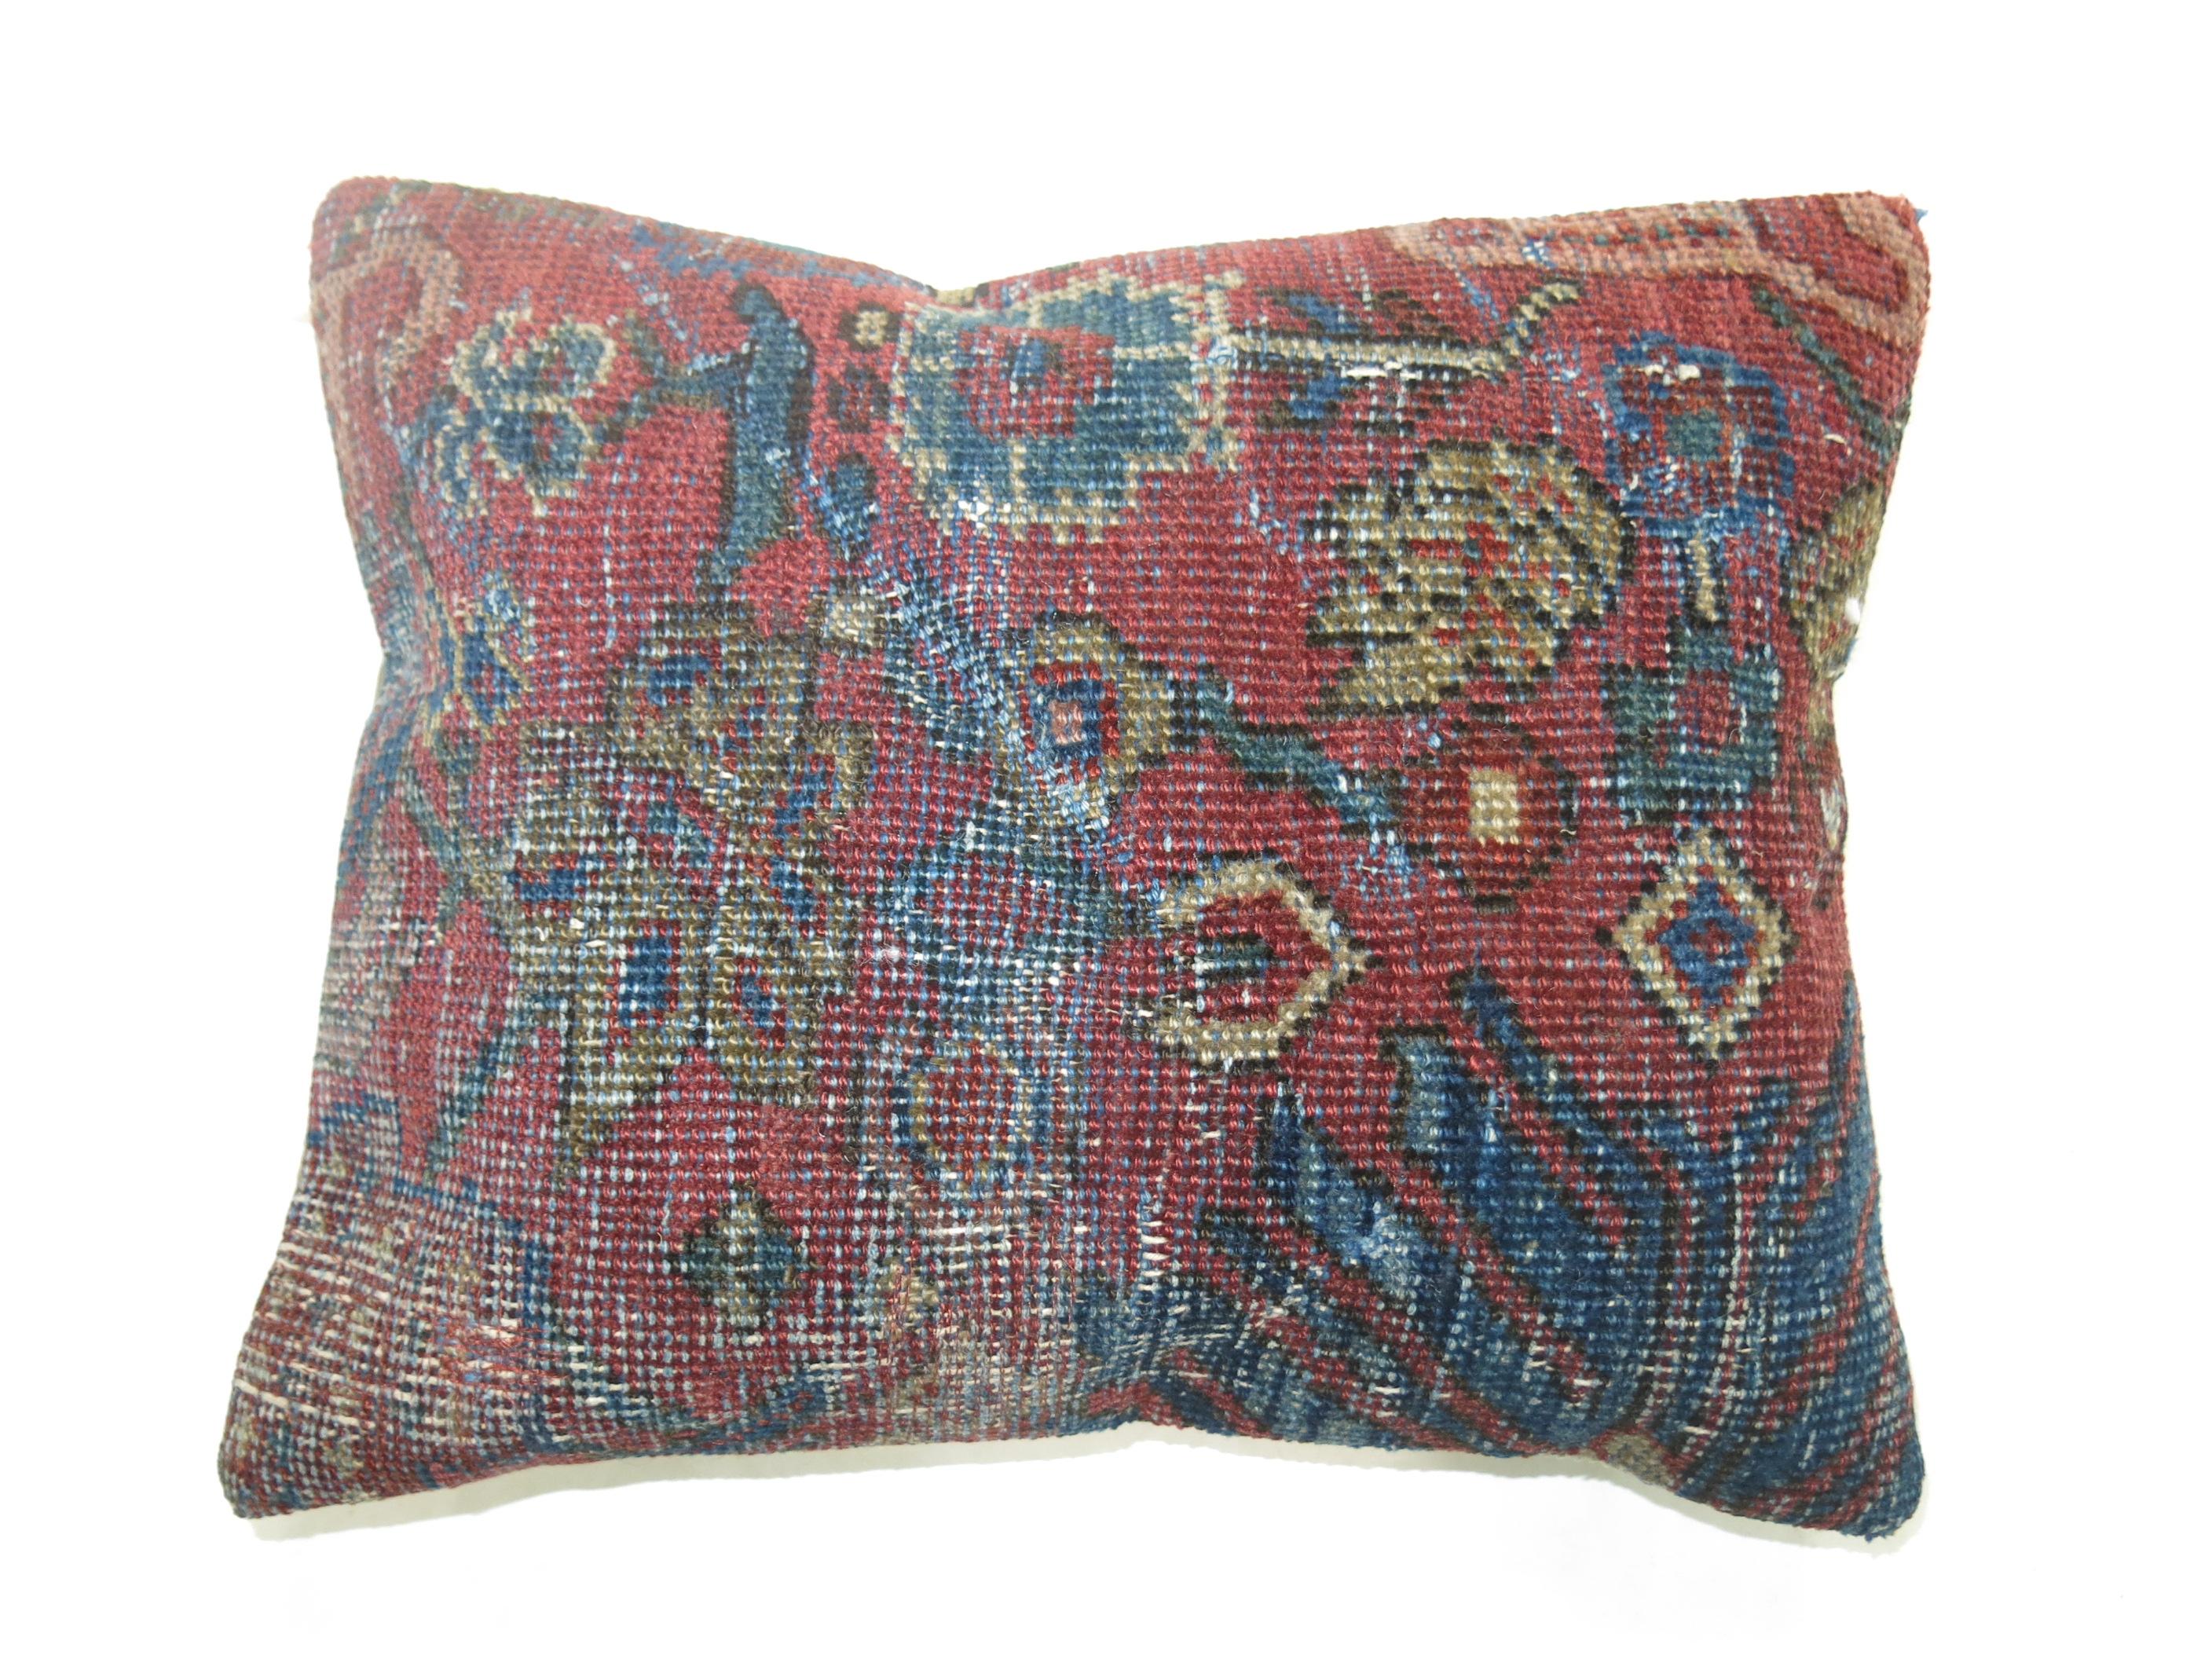 Kissen aus einem antiken persischen Mahal-Teppich mit Baumwollrücken.

Maße: 13'' x 16''.